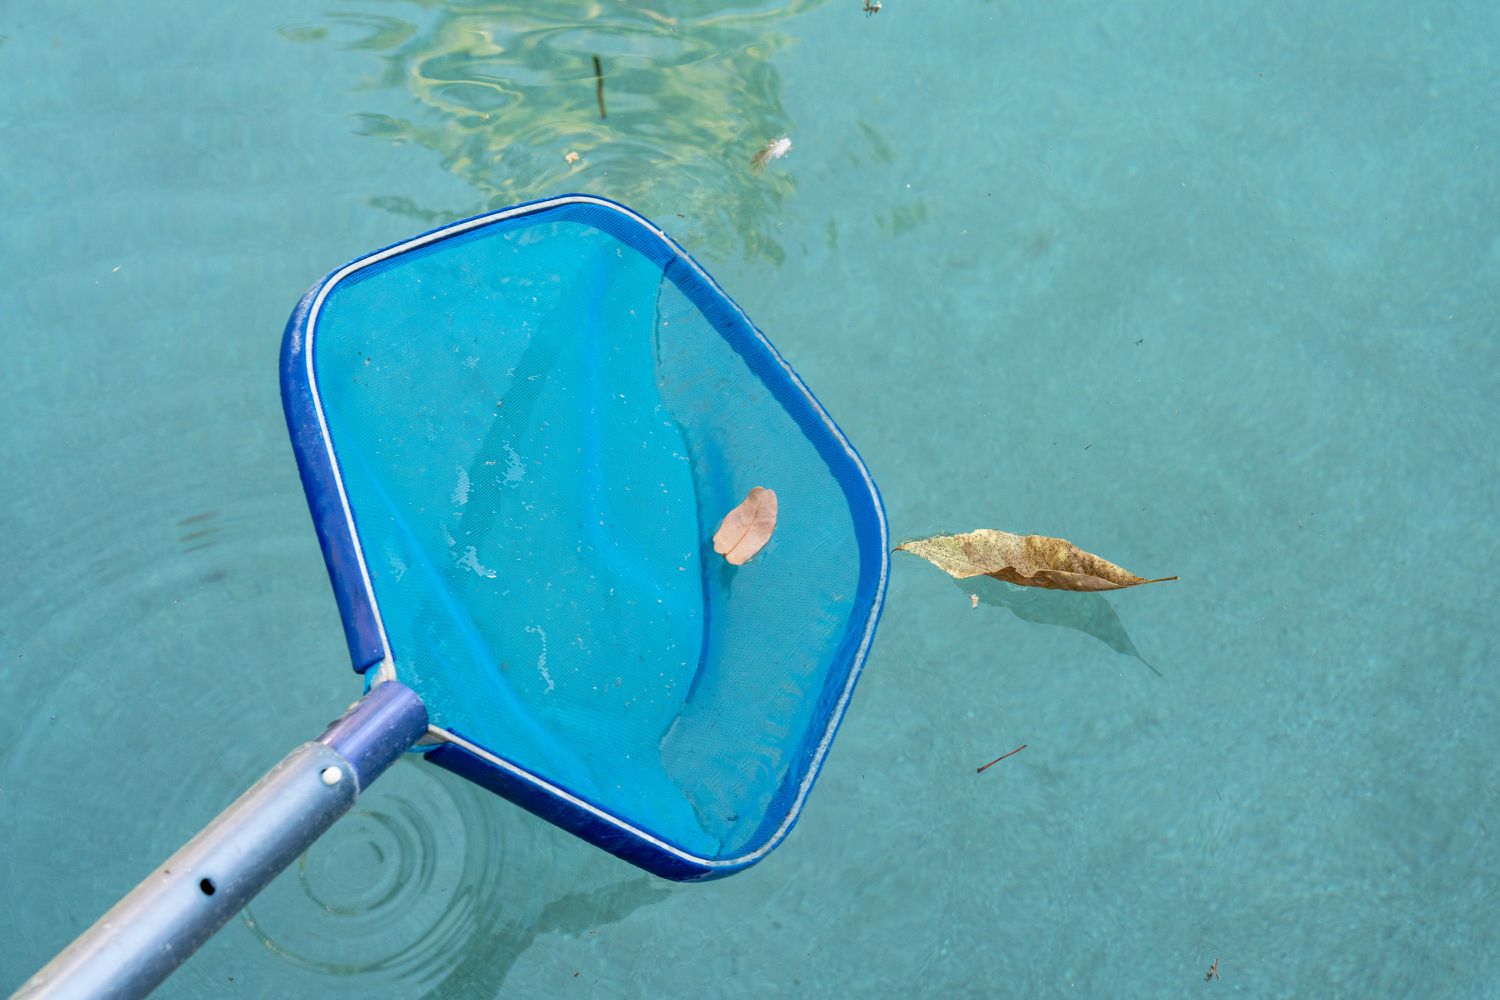 Organische Stoffe und Blätter werden mit einem blauen Netz aus dem Pool entfernt